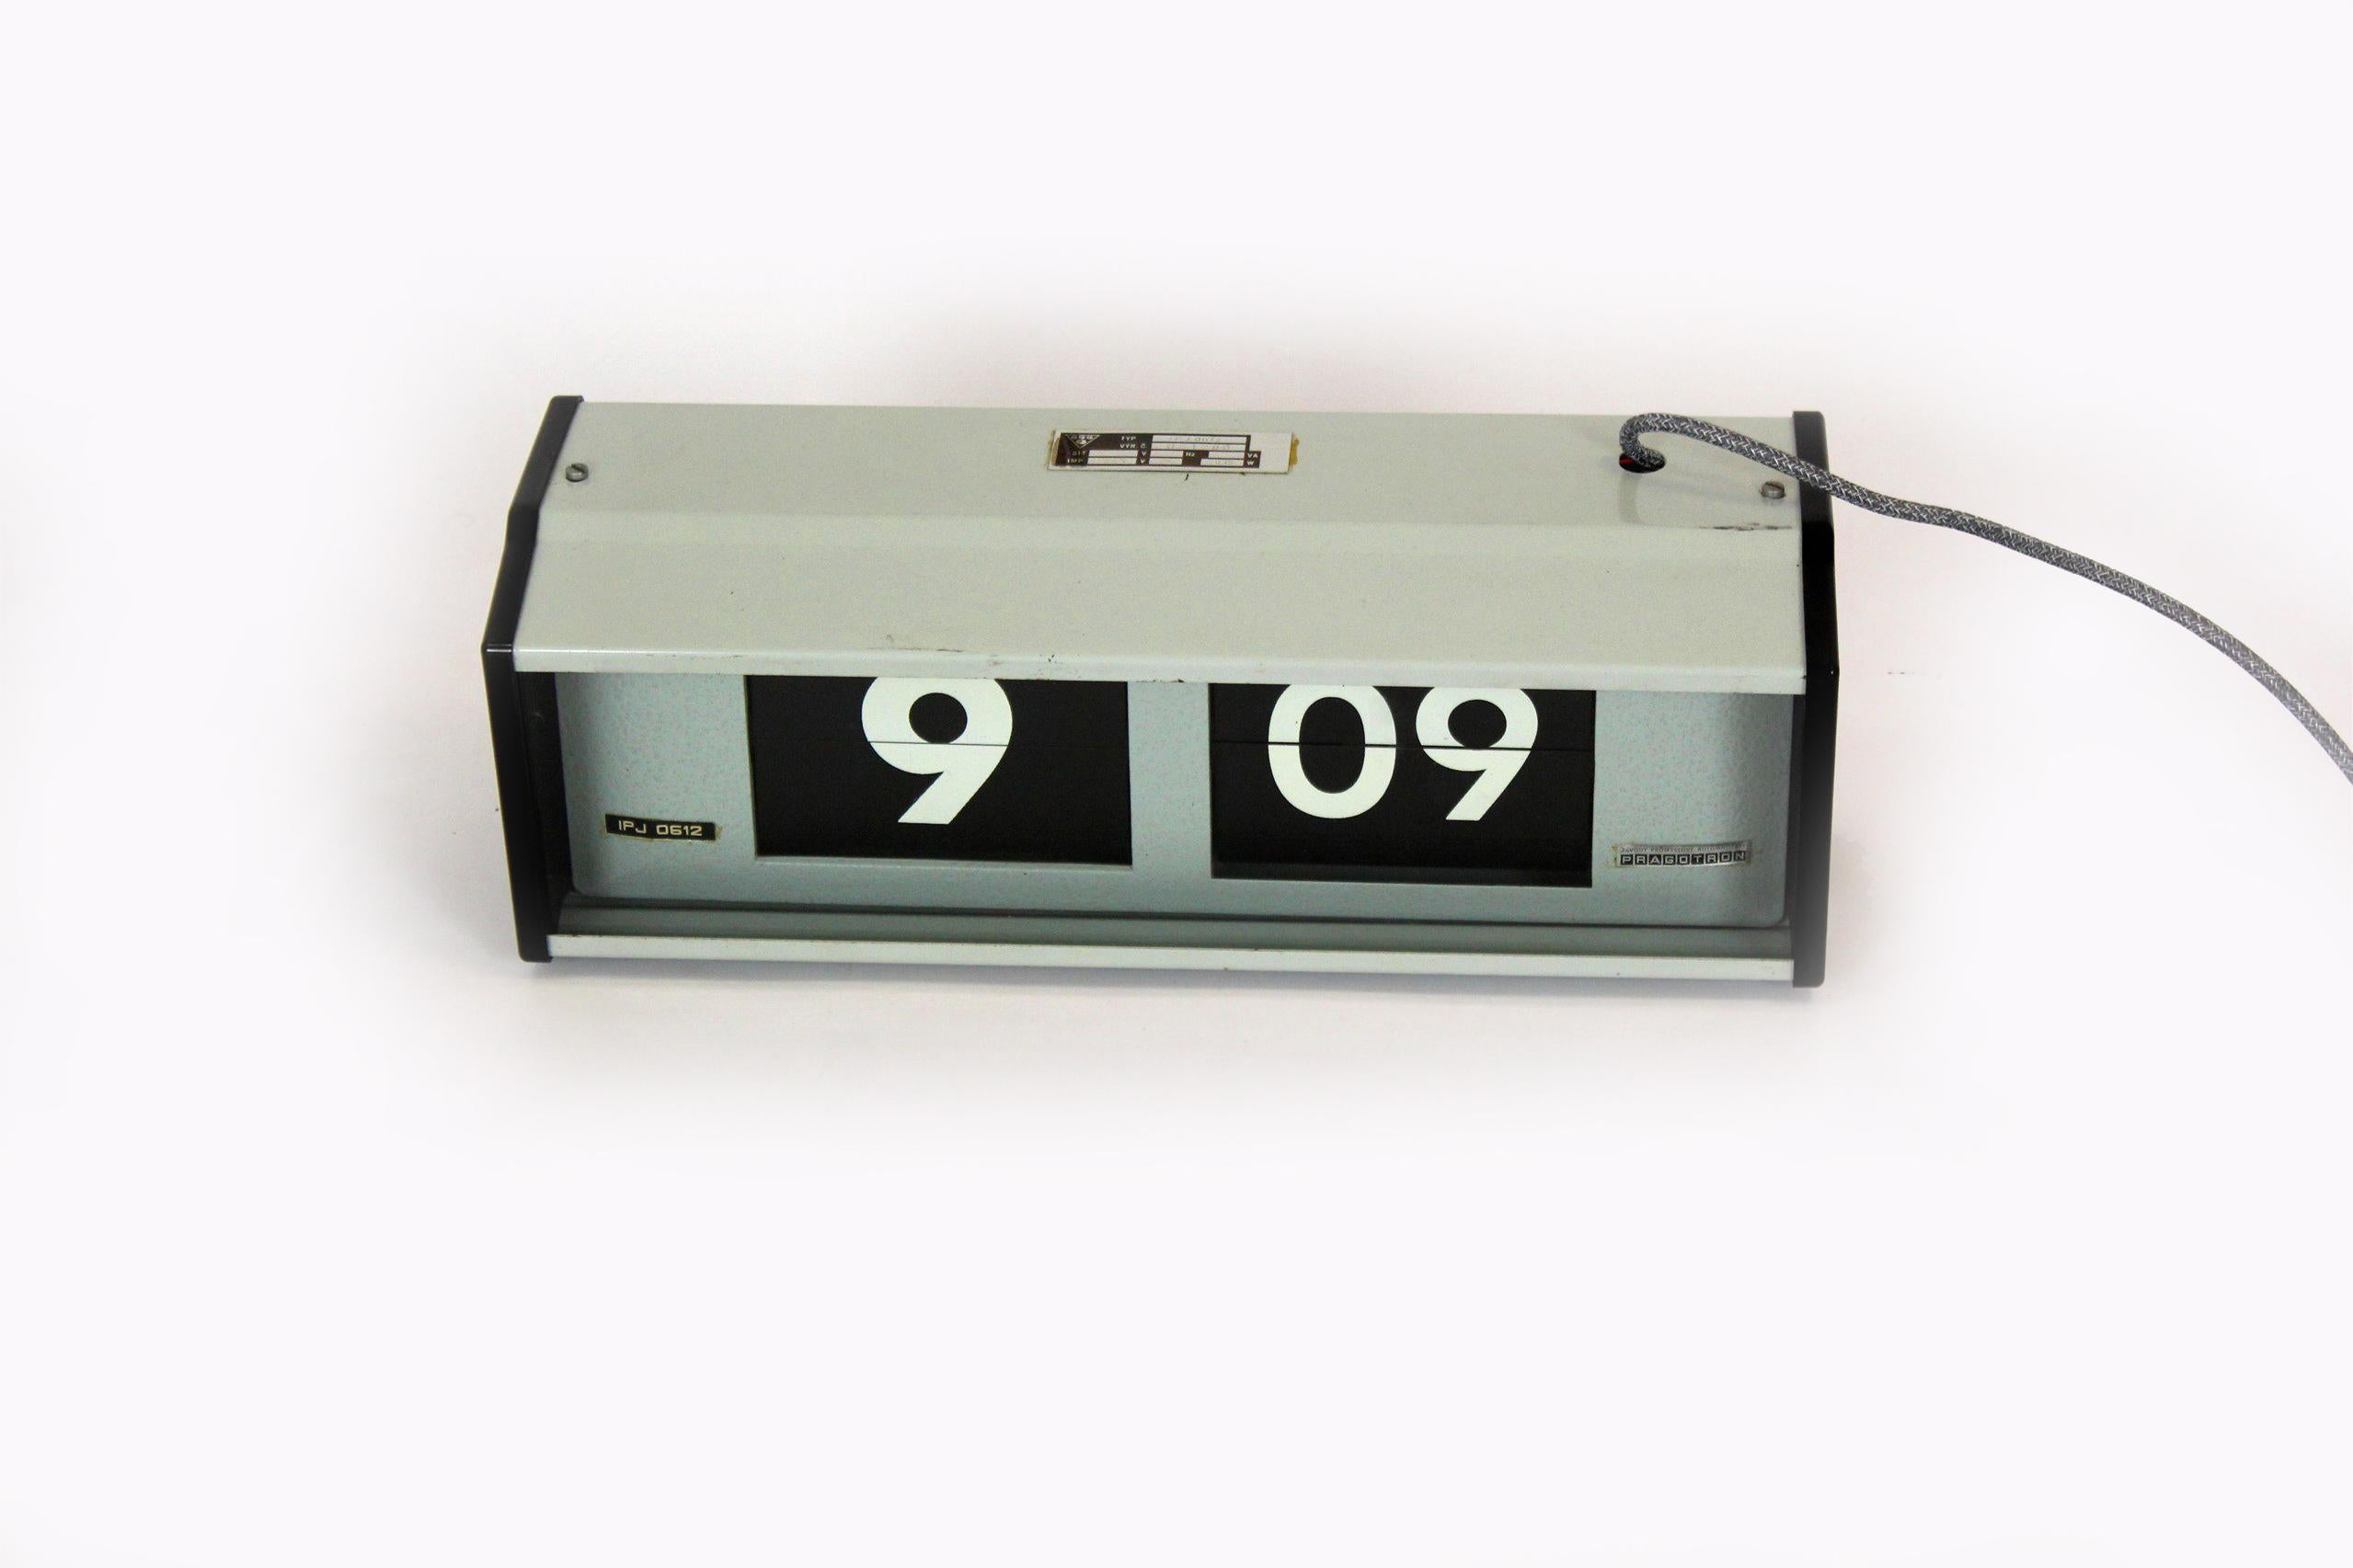 Die Pragotron IPJ0612 Flip-Wanduhr wurde in den 1980er Jahren in der Tschechoslowakei entworfen und hergestellt. Uhren dieser Art wurden in Bahnhöfen, Schulen, öffentlichen Verwaltungsgebäuden usw. verwendet.
Die Uhr wurde umgerüstet, ein